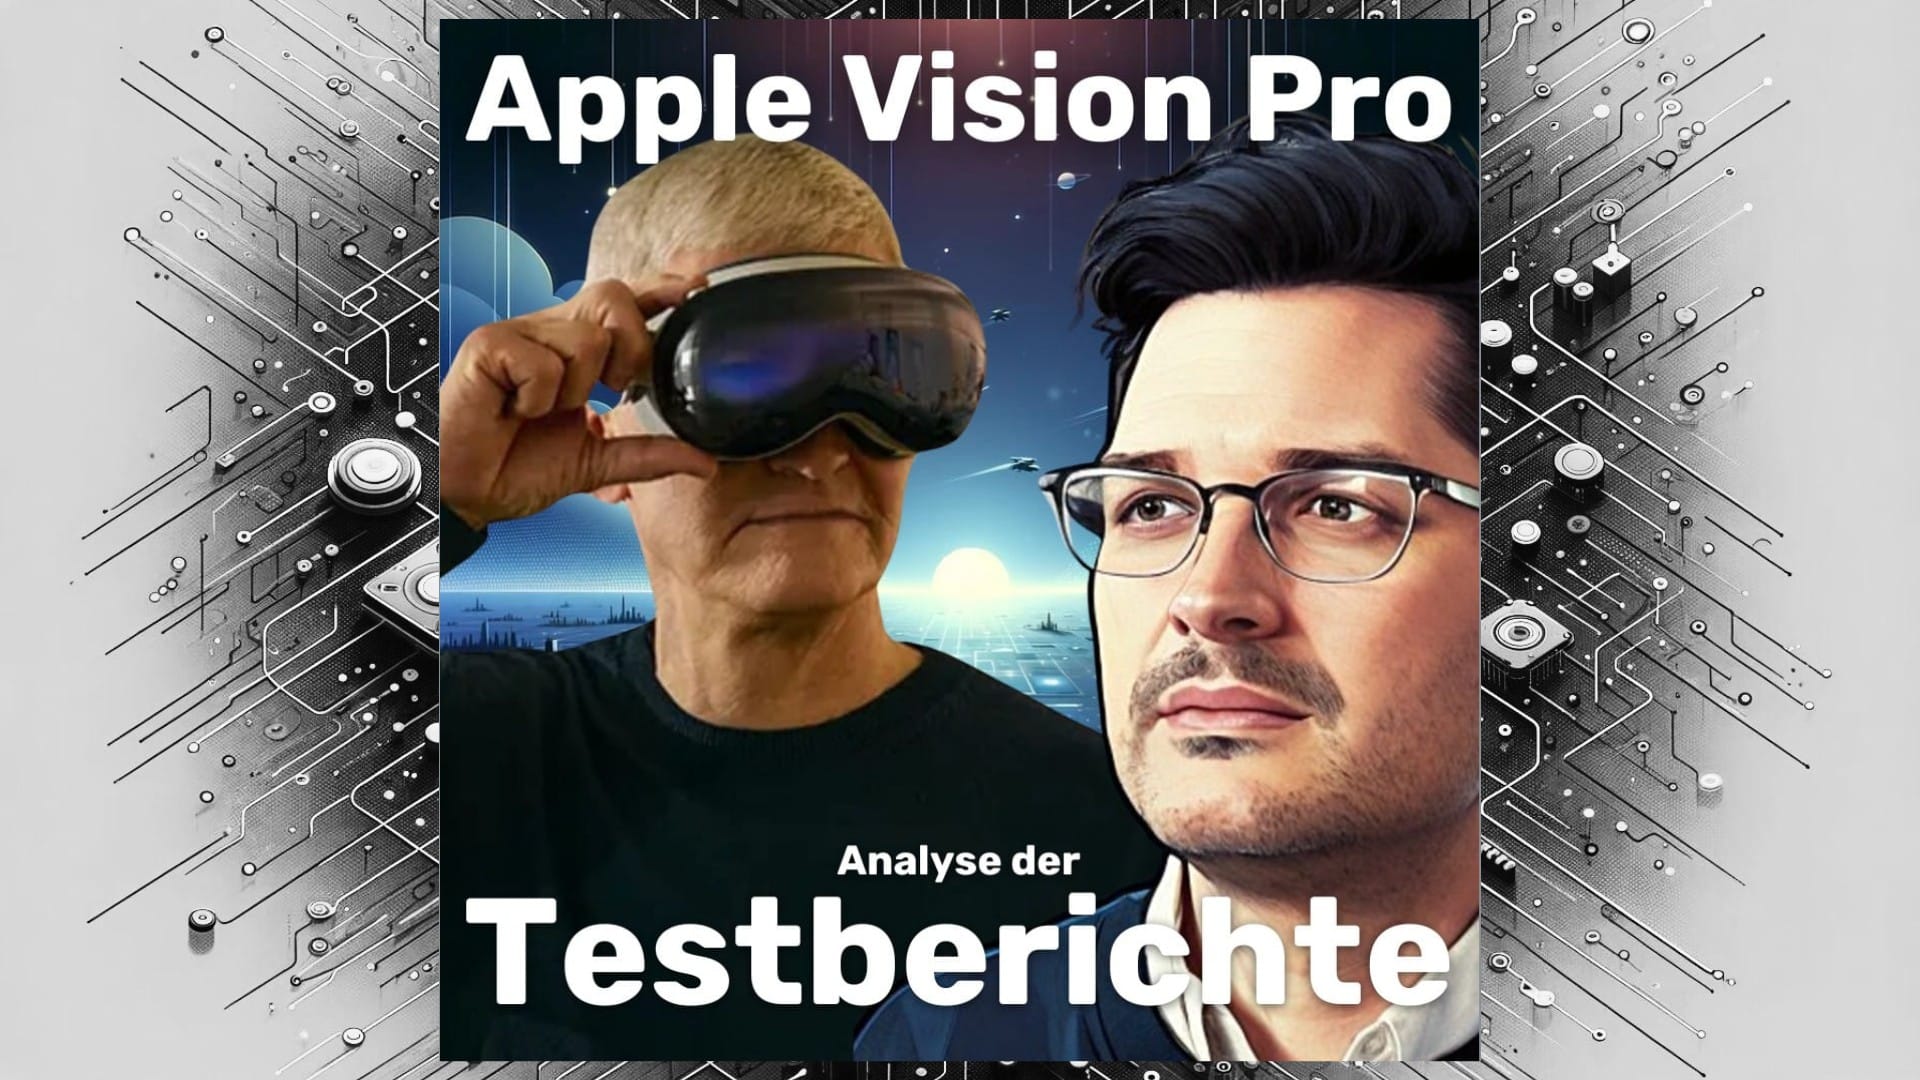 Apple Vision Pro Testbericht - Die Analyse